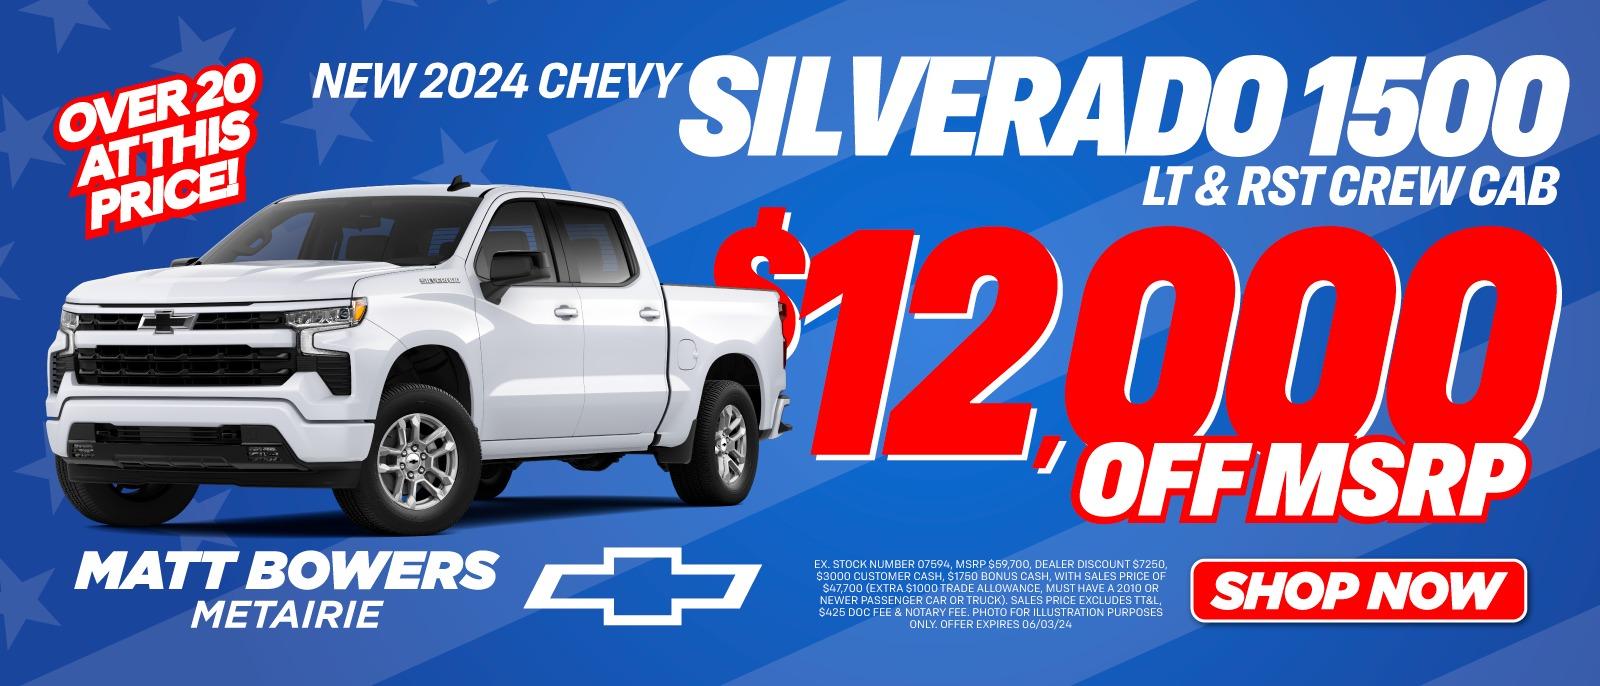 2024 Chevy Silverado 1500 Deal